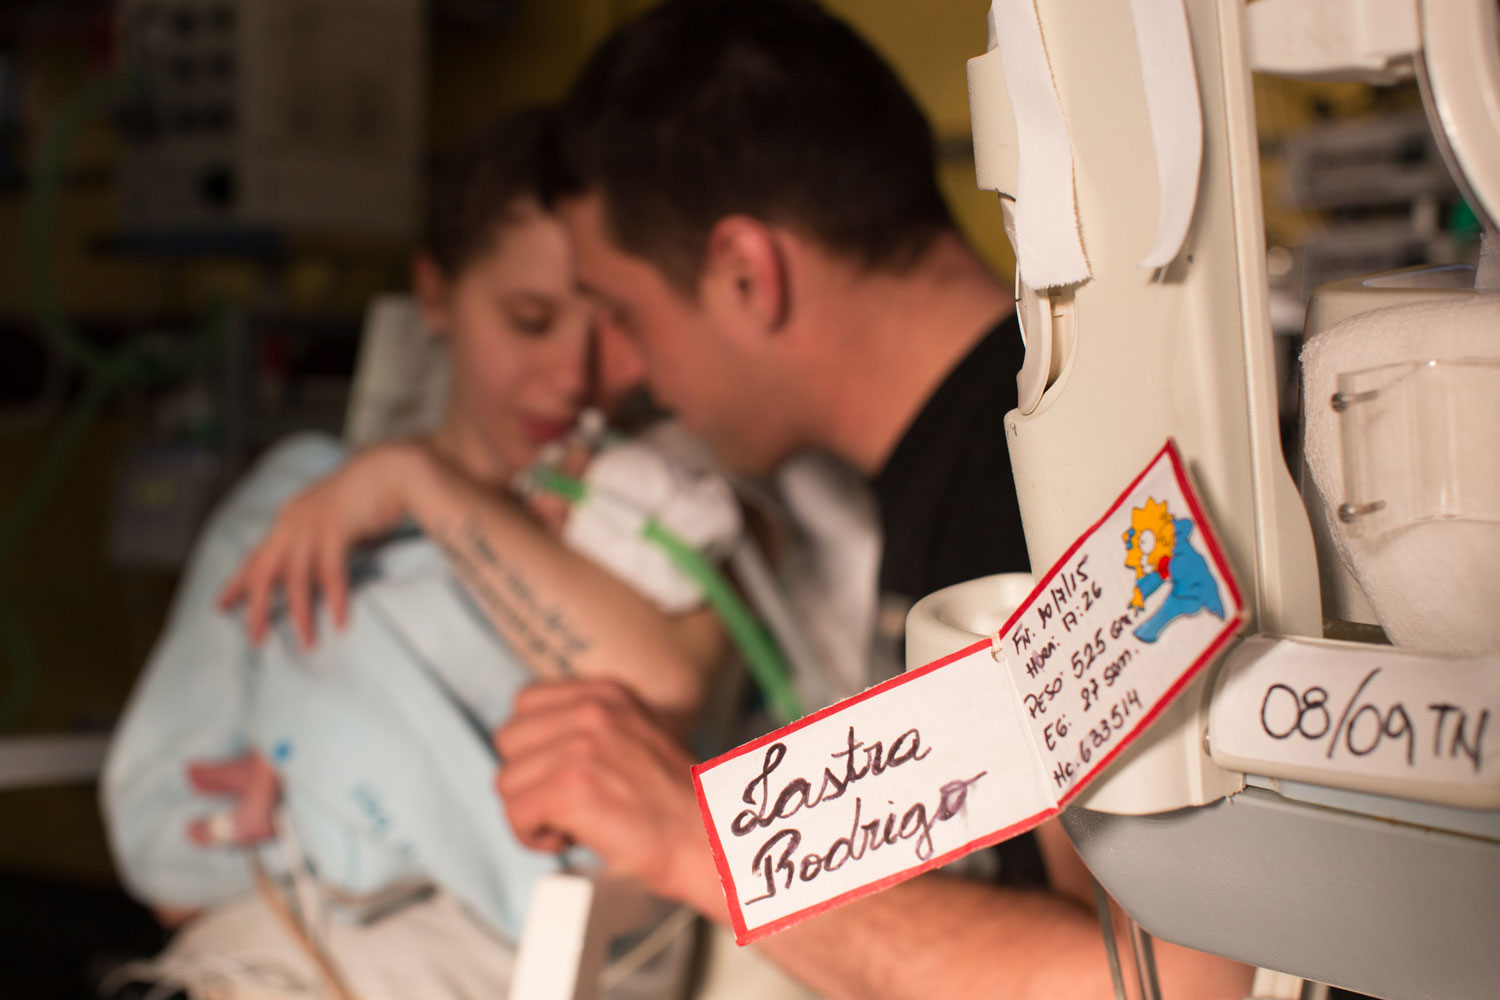 Pareja con bebé prematuro, Argentina